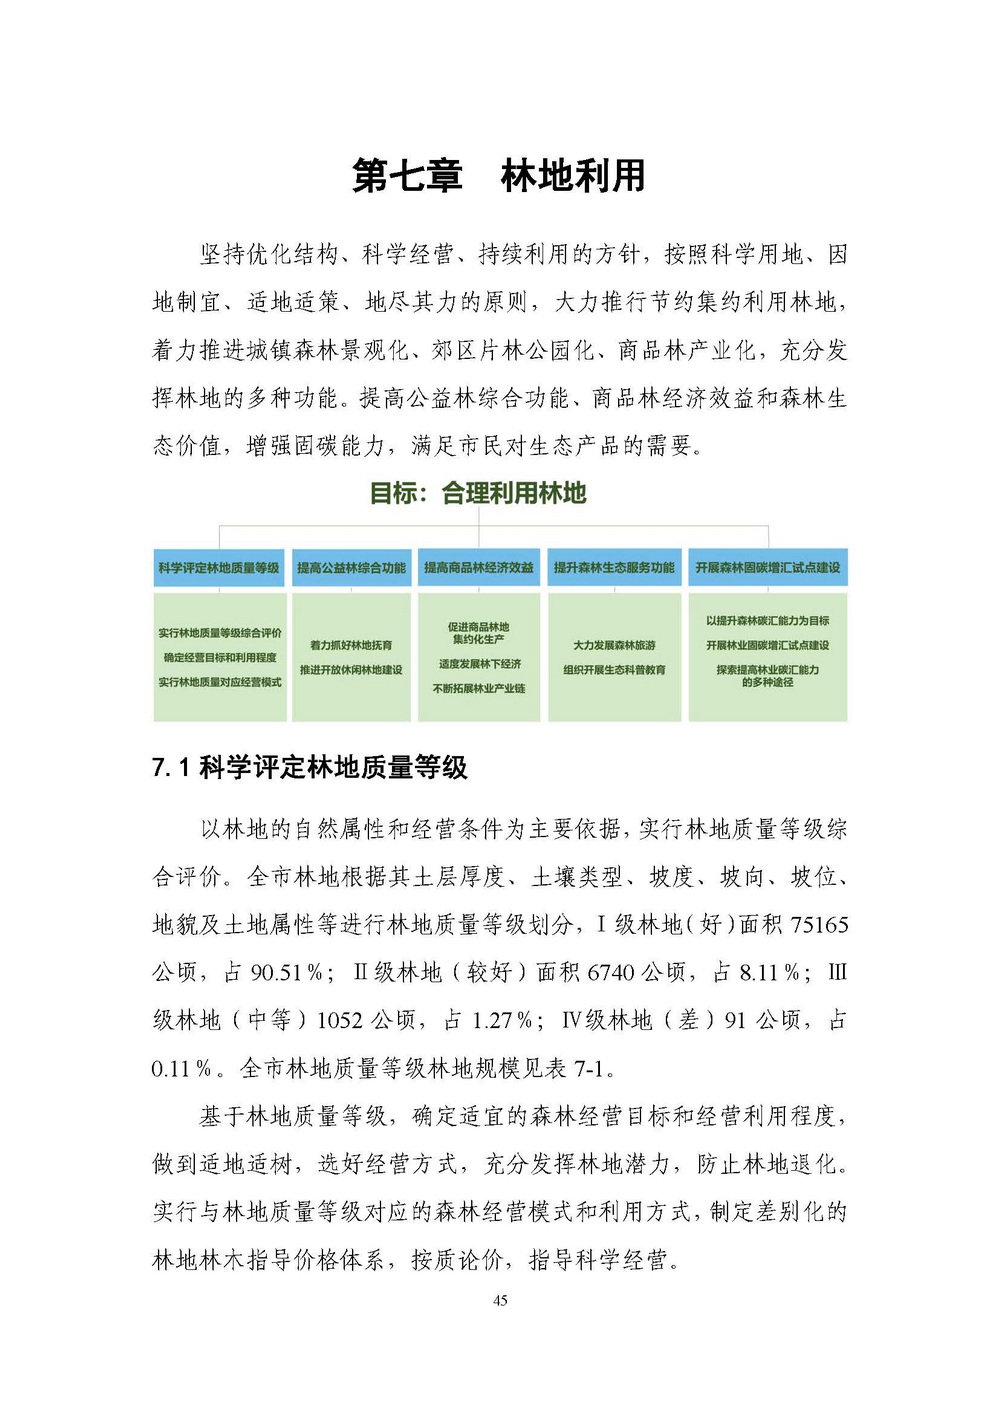 上海市森林和林地保护利用规划文本 公开稿 附图_页面_48.jpg